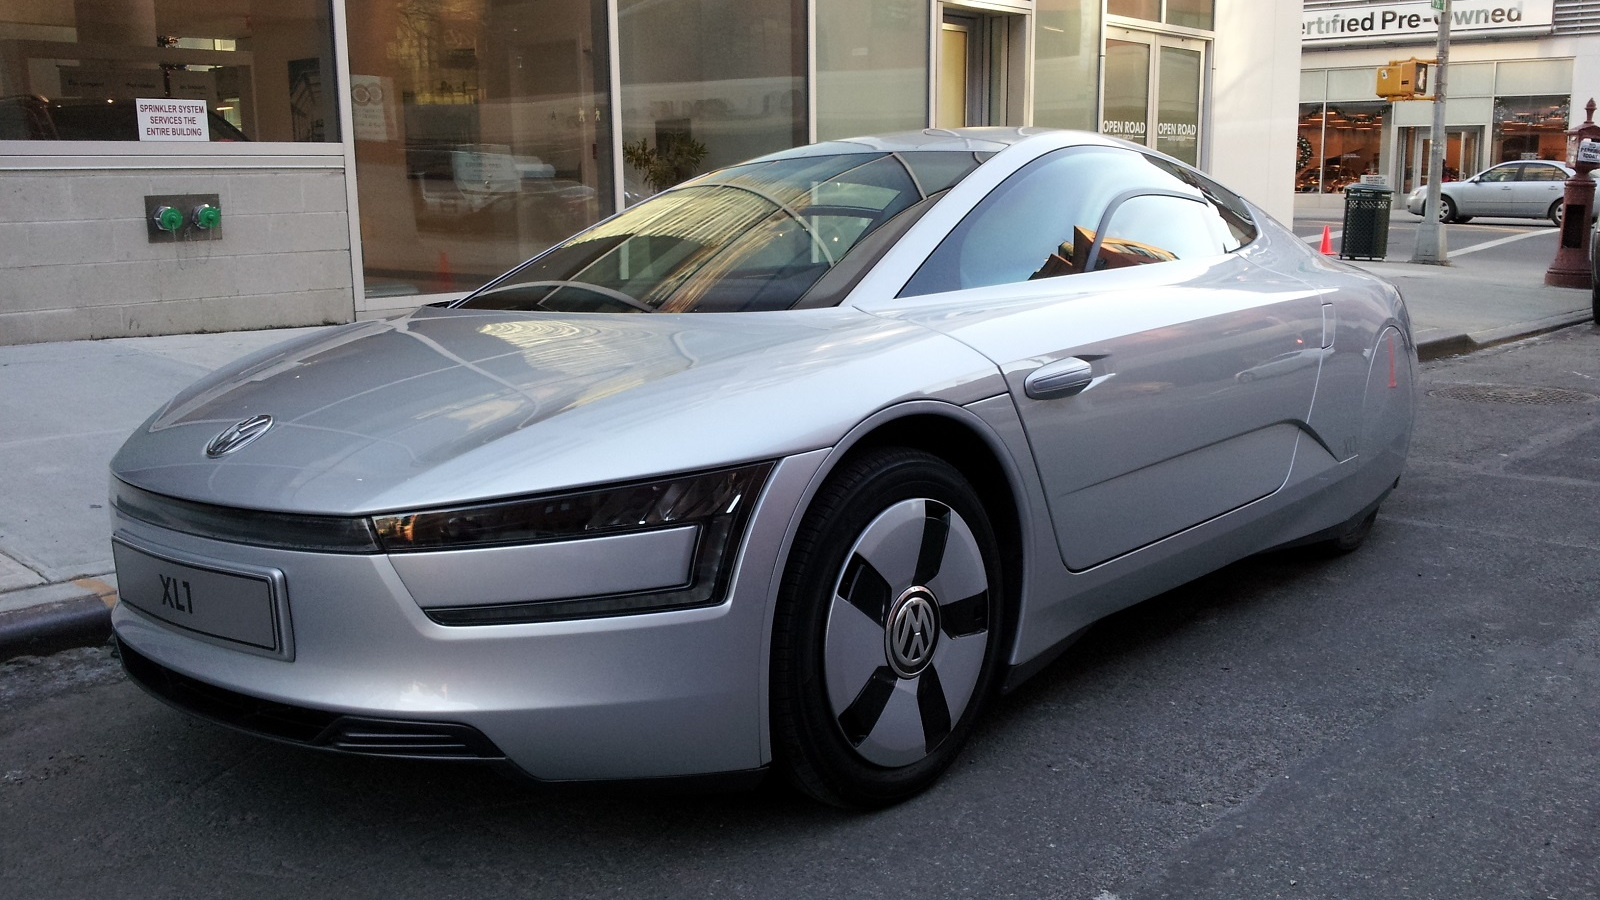 Volkswagen XL1 (European model), New York City, Dec 2013